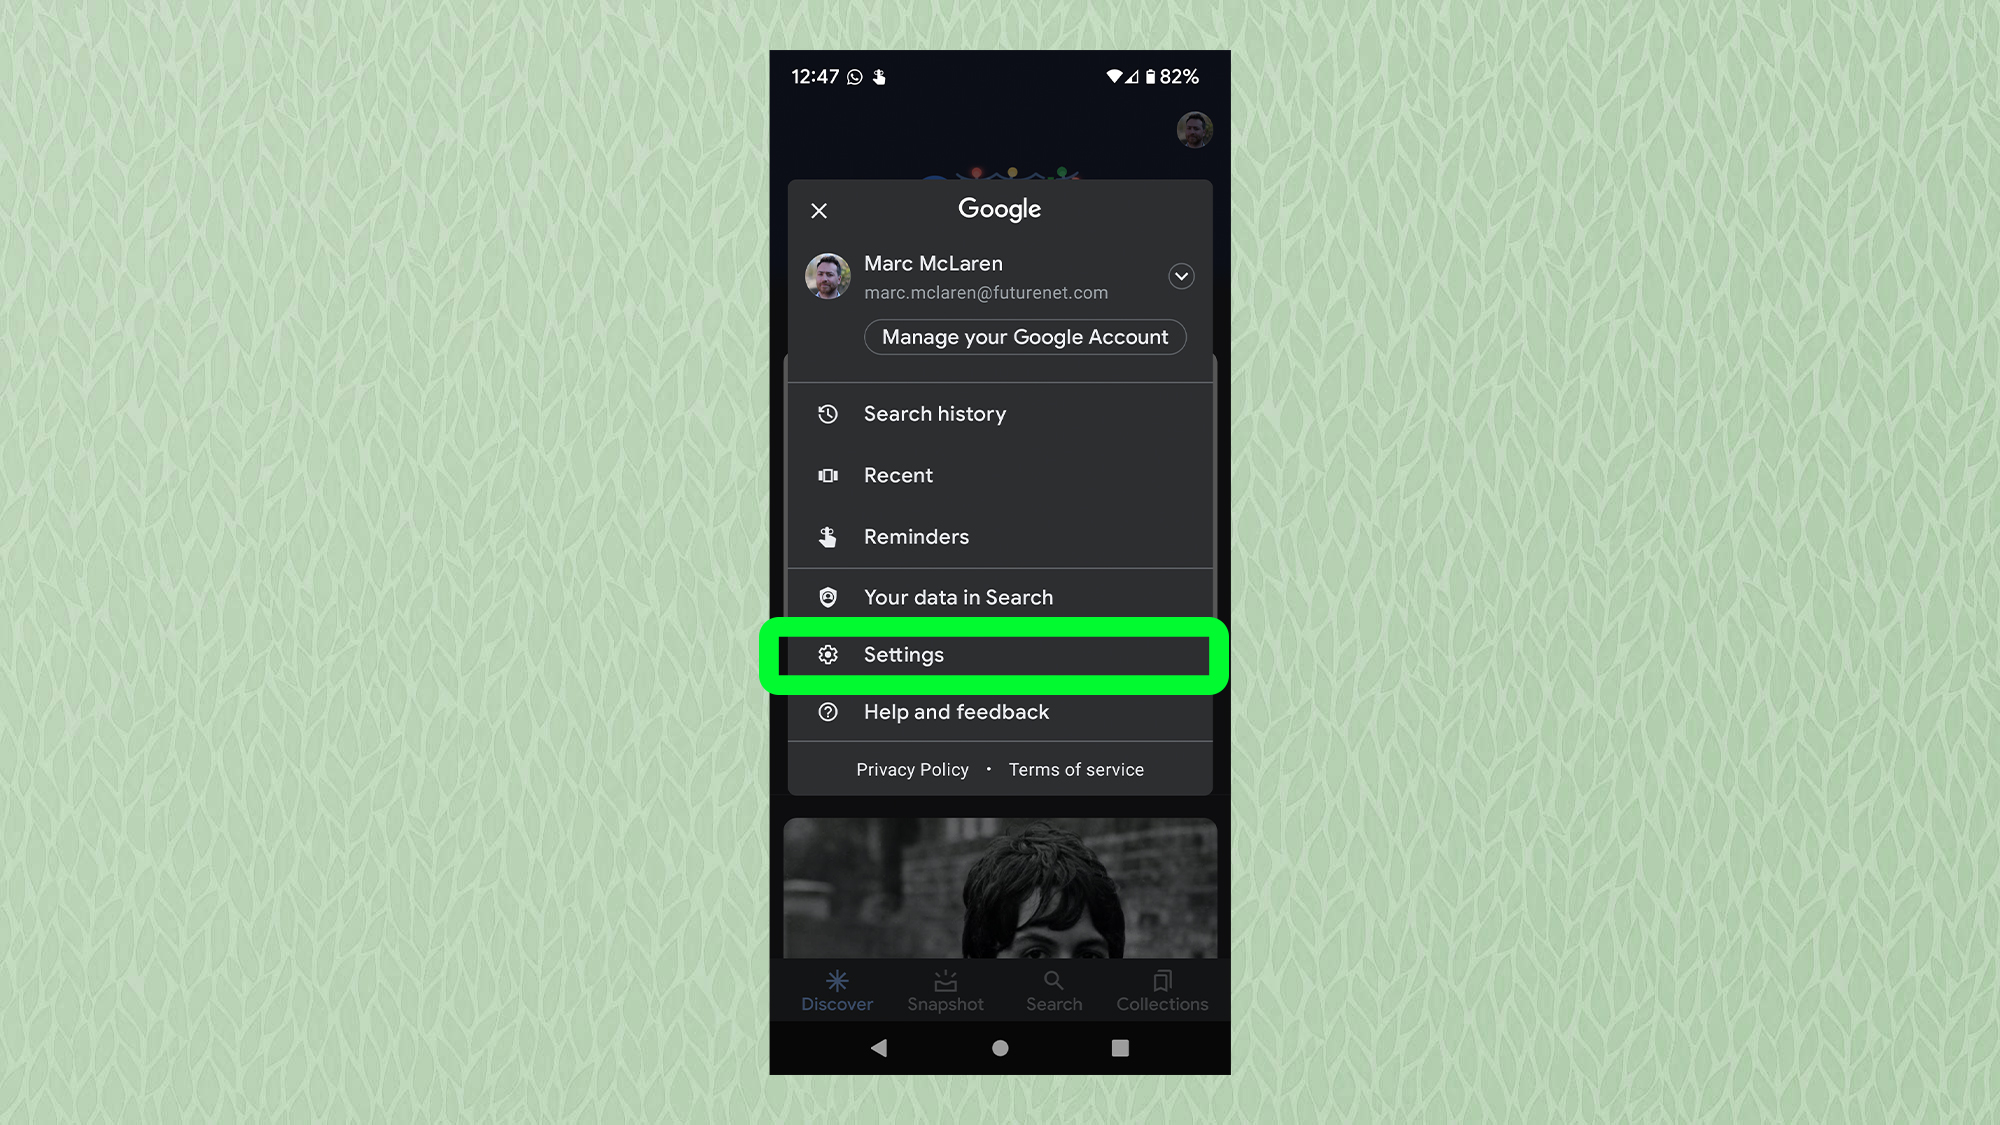 Снимок экрана с Android, показывающий меню настроек Google с выделенными настройками